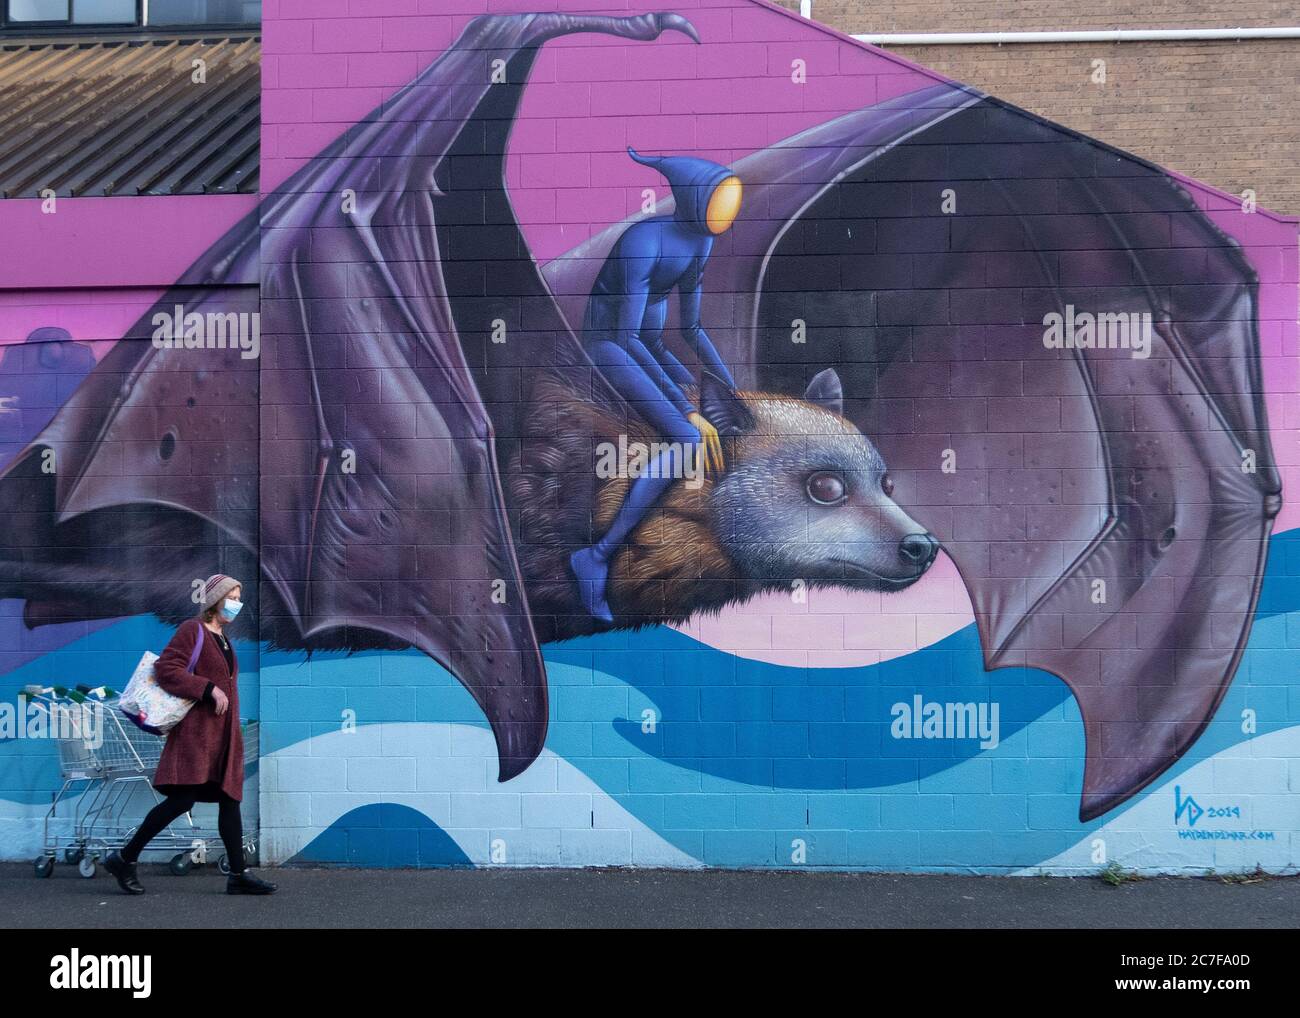 Melbourne Australien Covid-19 Pandemie. Eine Person mit einer schützenden Gesichtsmaske geht an der Street Art einer Fledermaus in Melbourne vorbei. Stockfoto